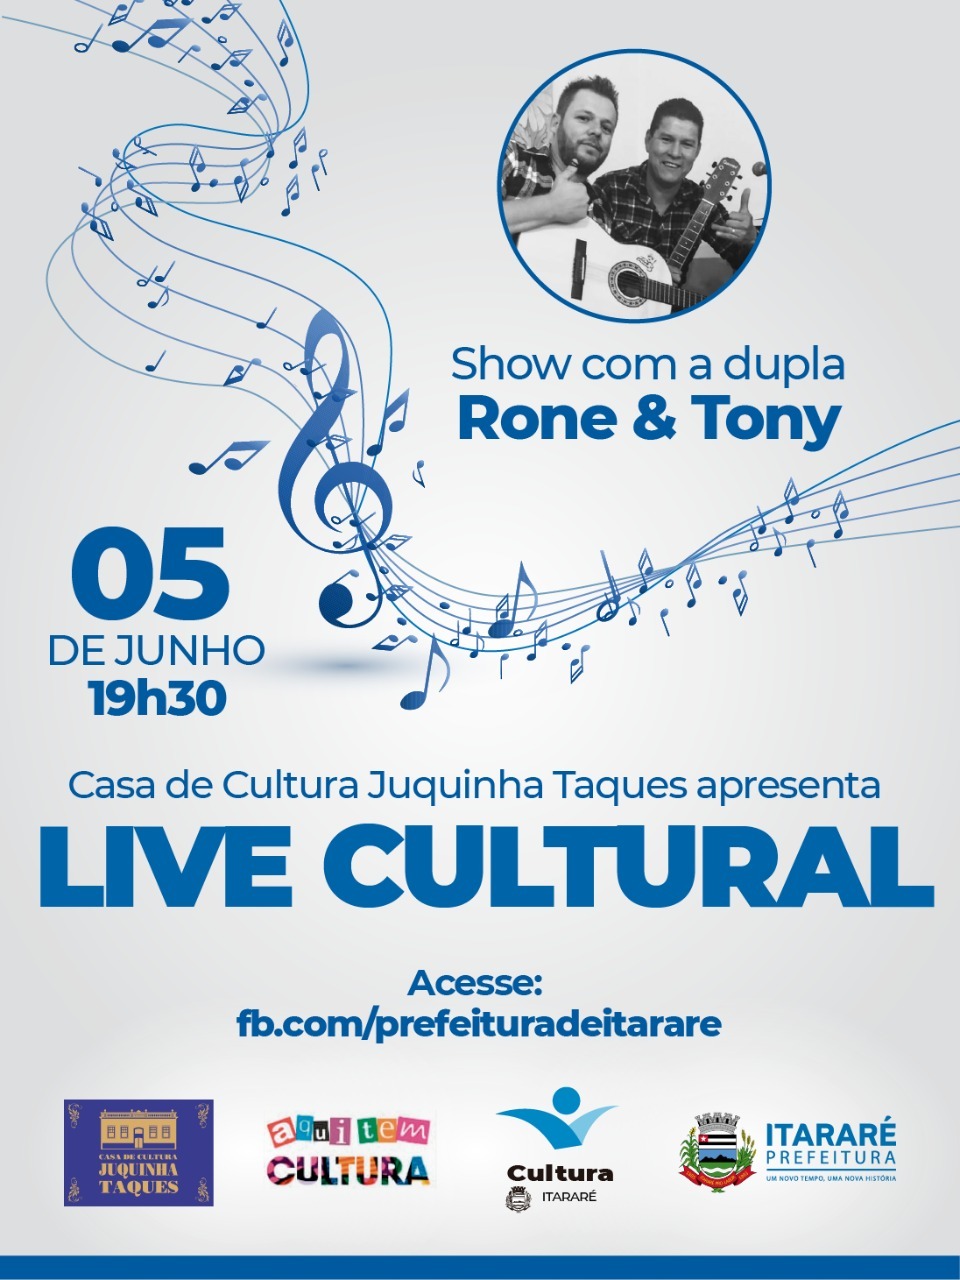 Rone & Tony se apresentam nesta sexta-feira (05) na Live Cultural da Prefeitura de Itararé (SP)